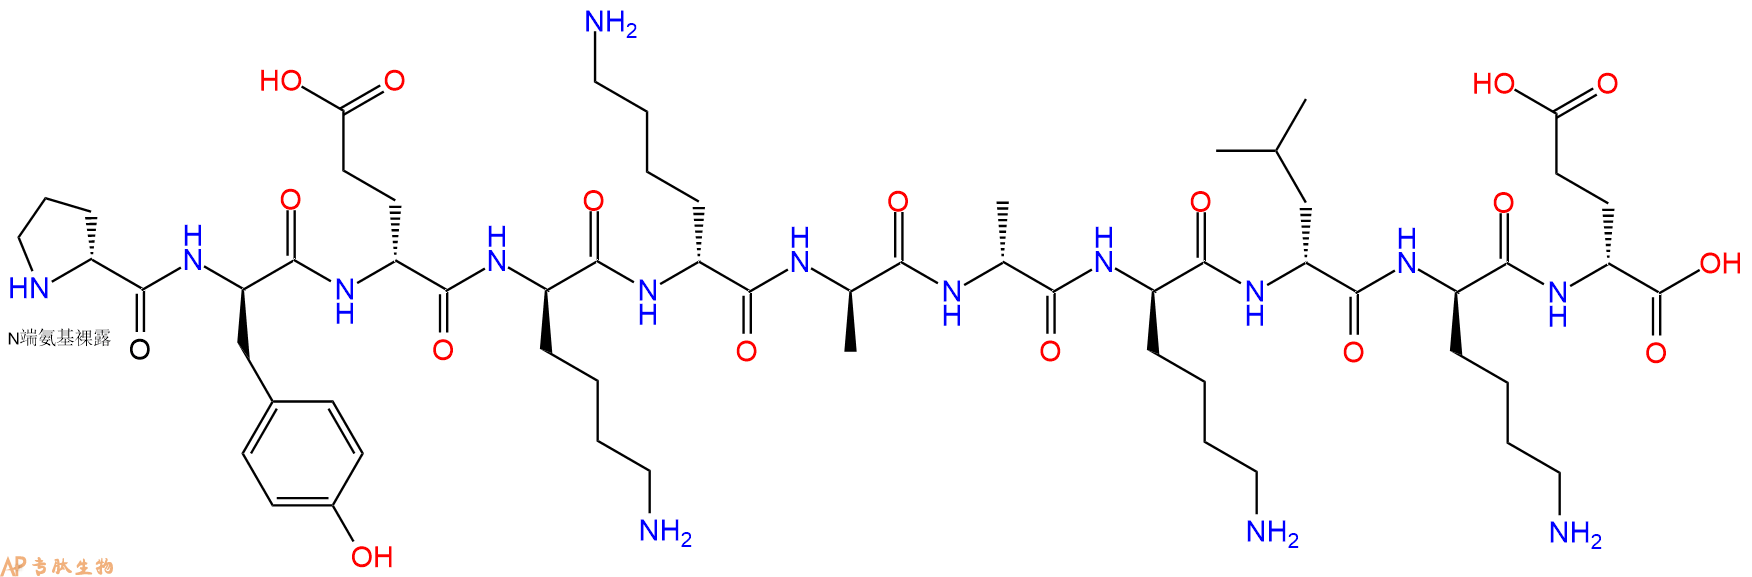 专肽生物产品H2N-DPro-DTyr-DGlu-DLys-DLys-DAla-DAla-DLys-DLeu-D